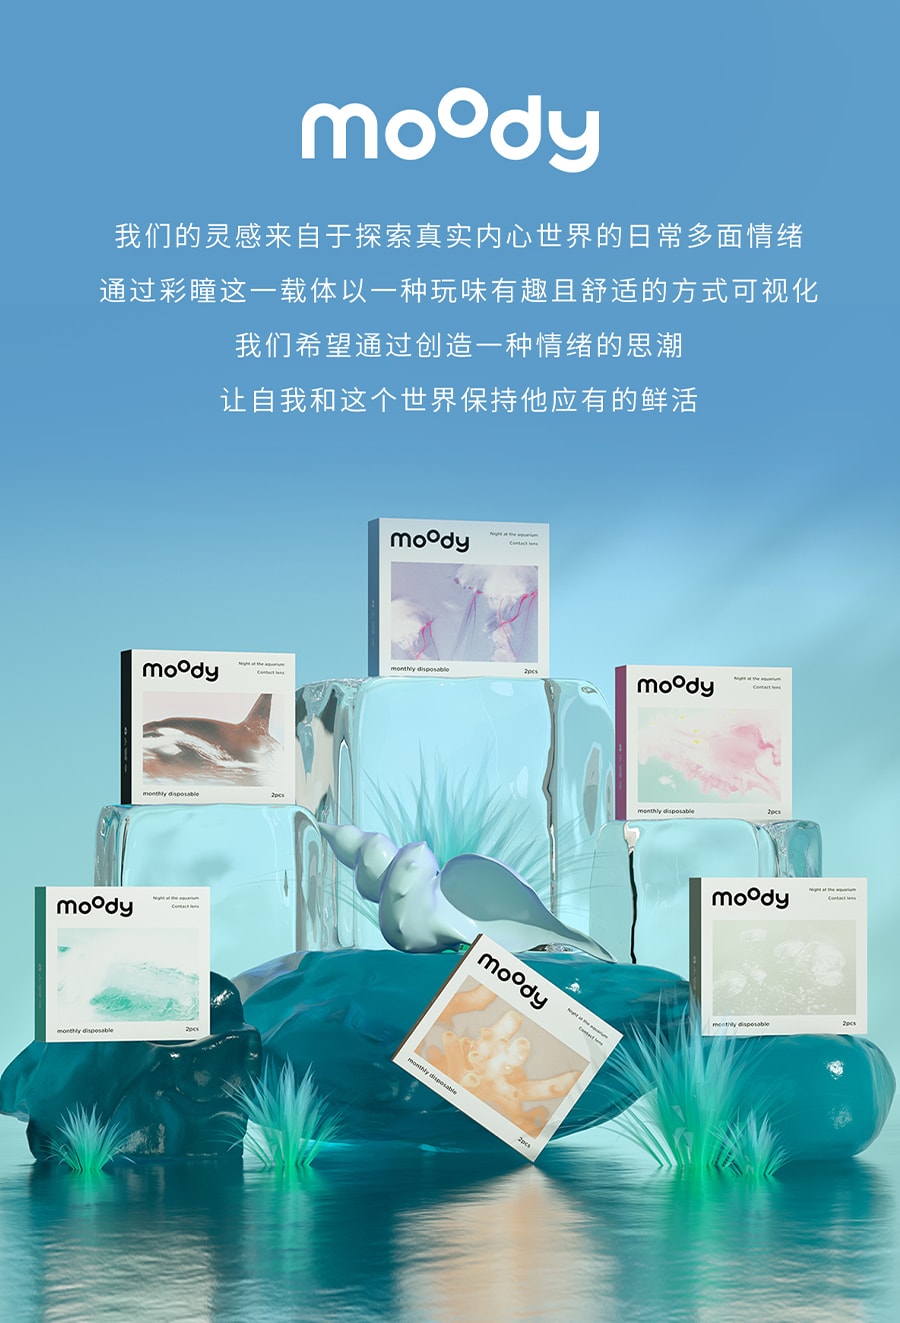 【中国直邮】moody美瞳月抛 水族馆系列 潜水海贝2片装 -7.50(750)